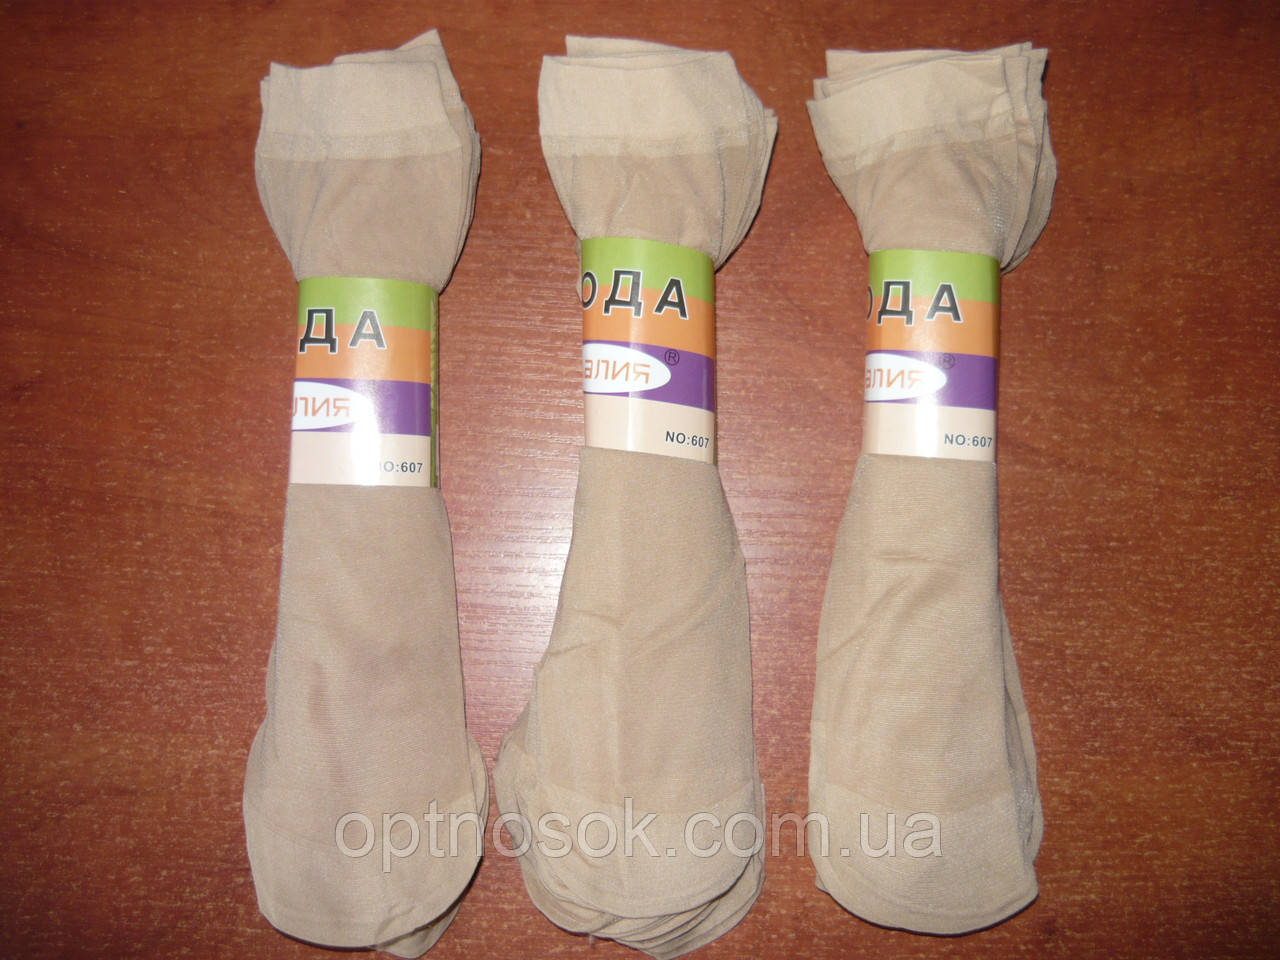 Капронові жіночі шкарпетки "Алія". Без гальм. Світло-бежеві